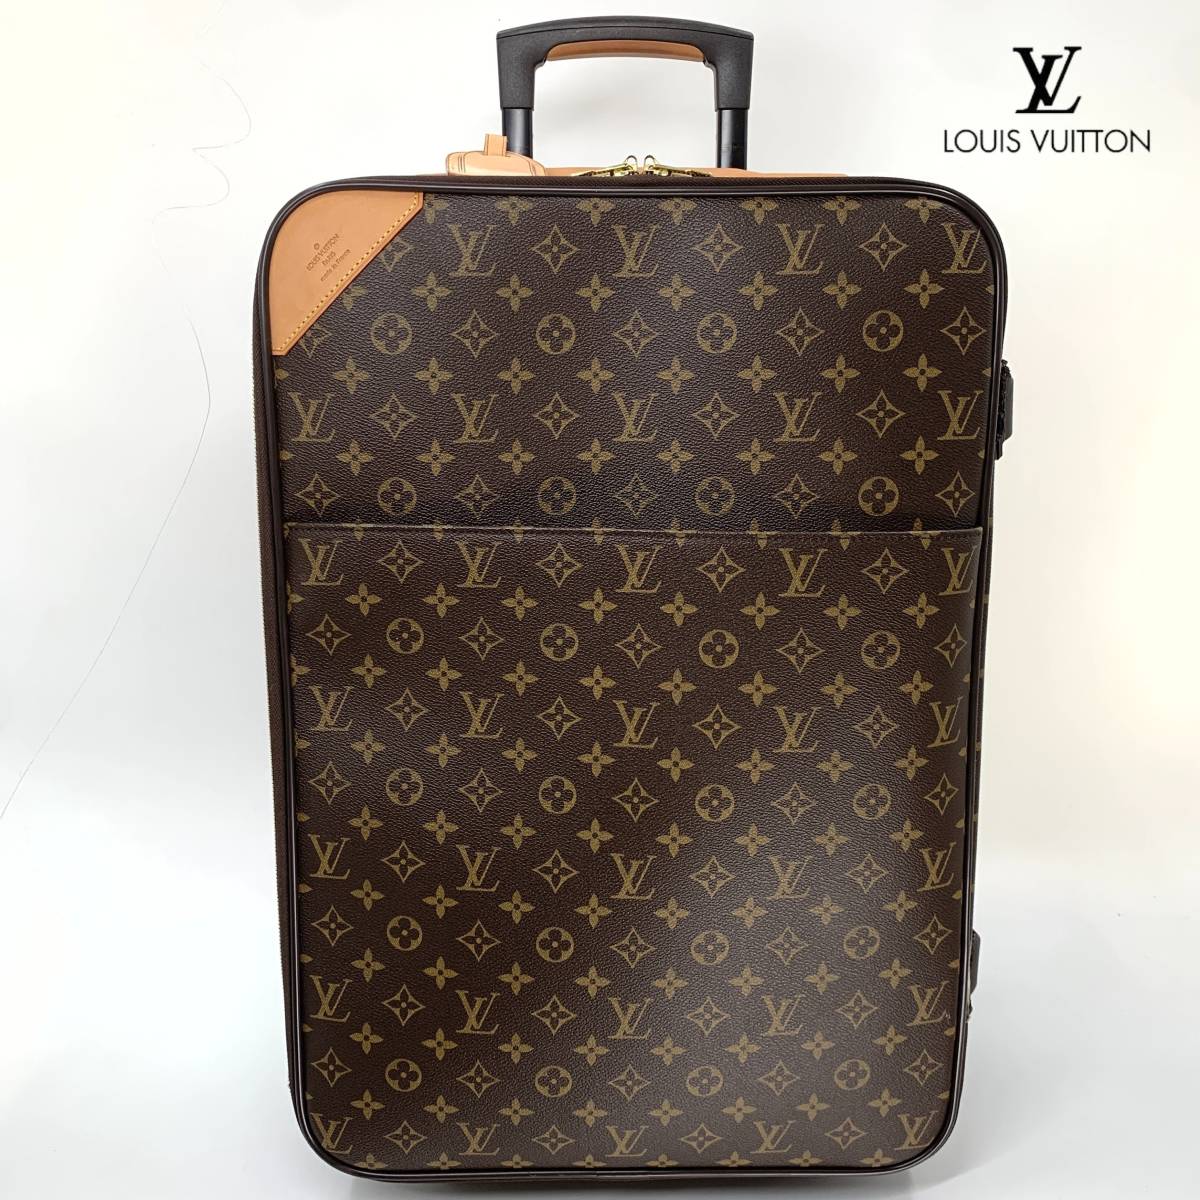 【超極美品】LOUIS VUITTON ルイヴィトン モノグラム ぺガス55 キャリーバッグ スーツケース 旅行 トラベル メンズ レディース 鞄